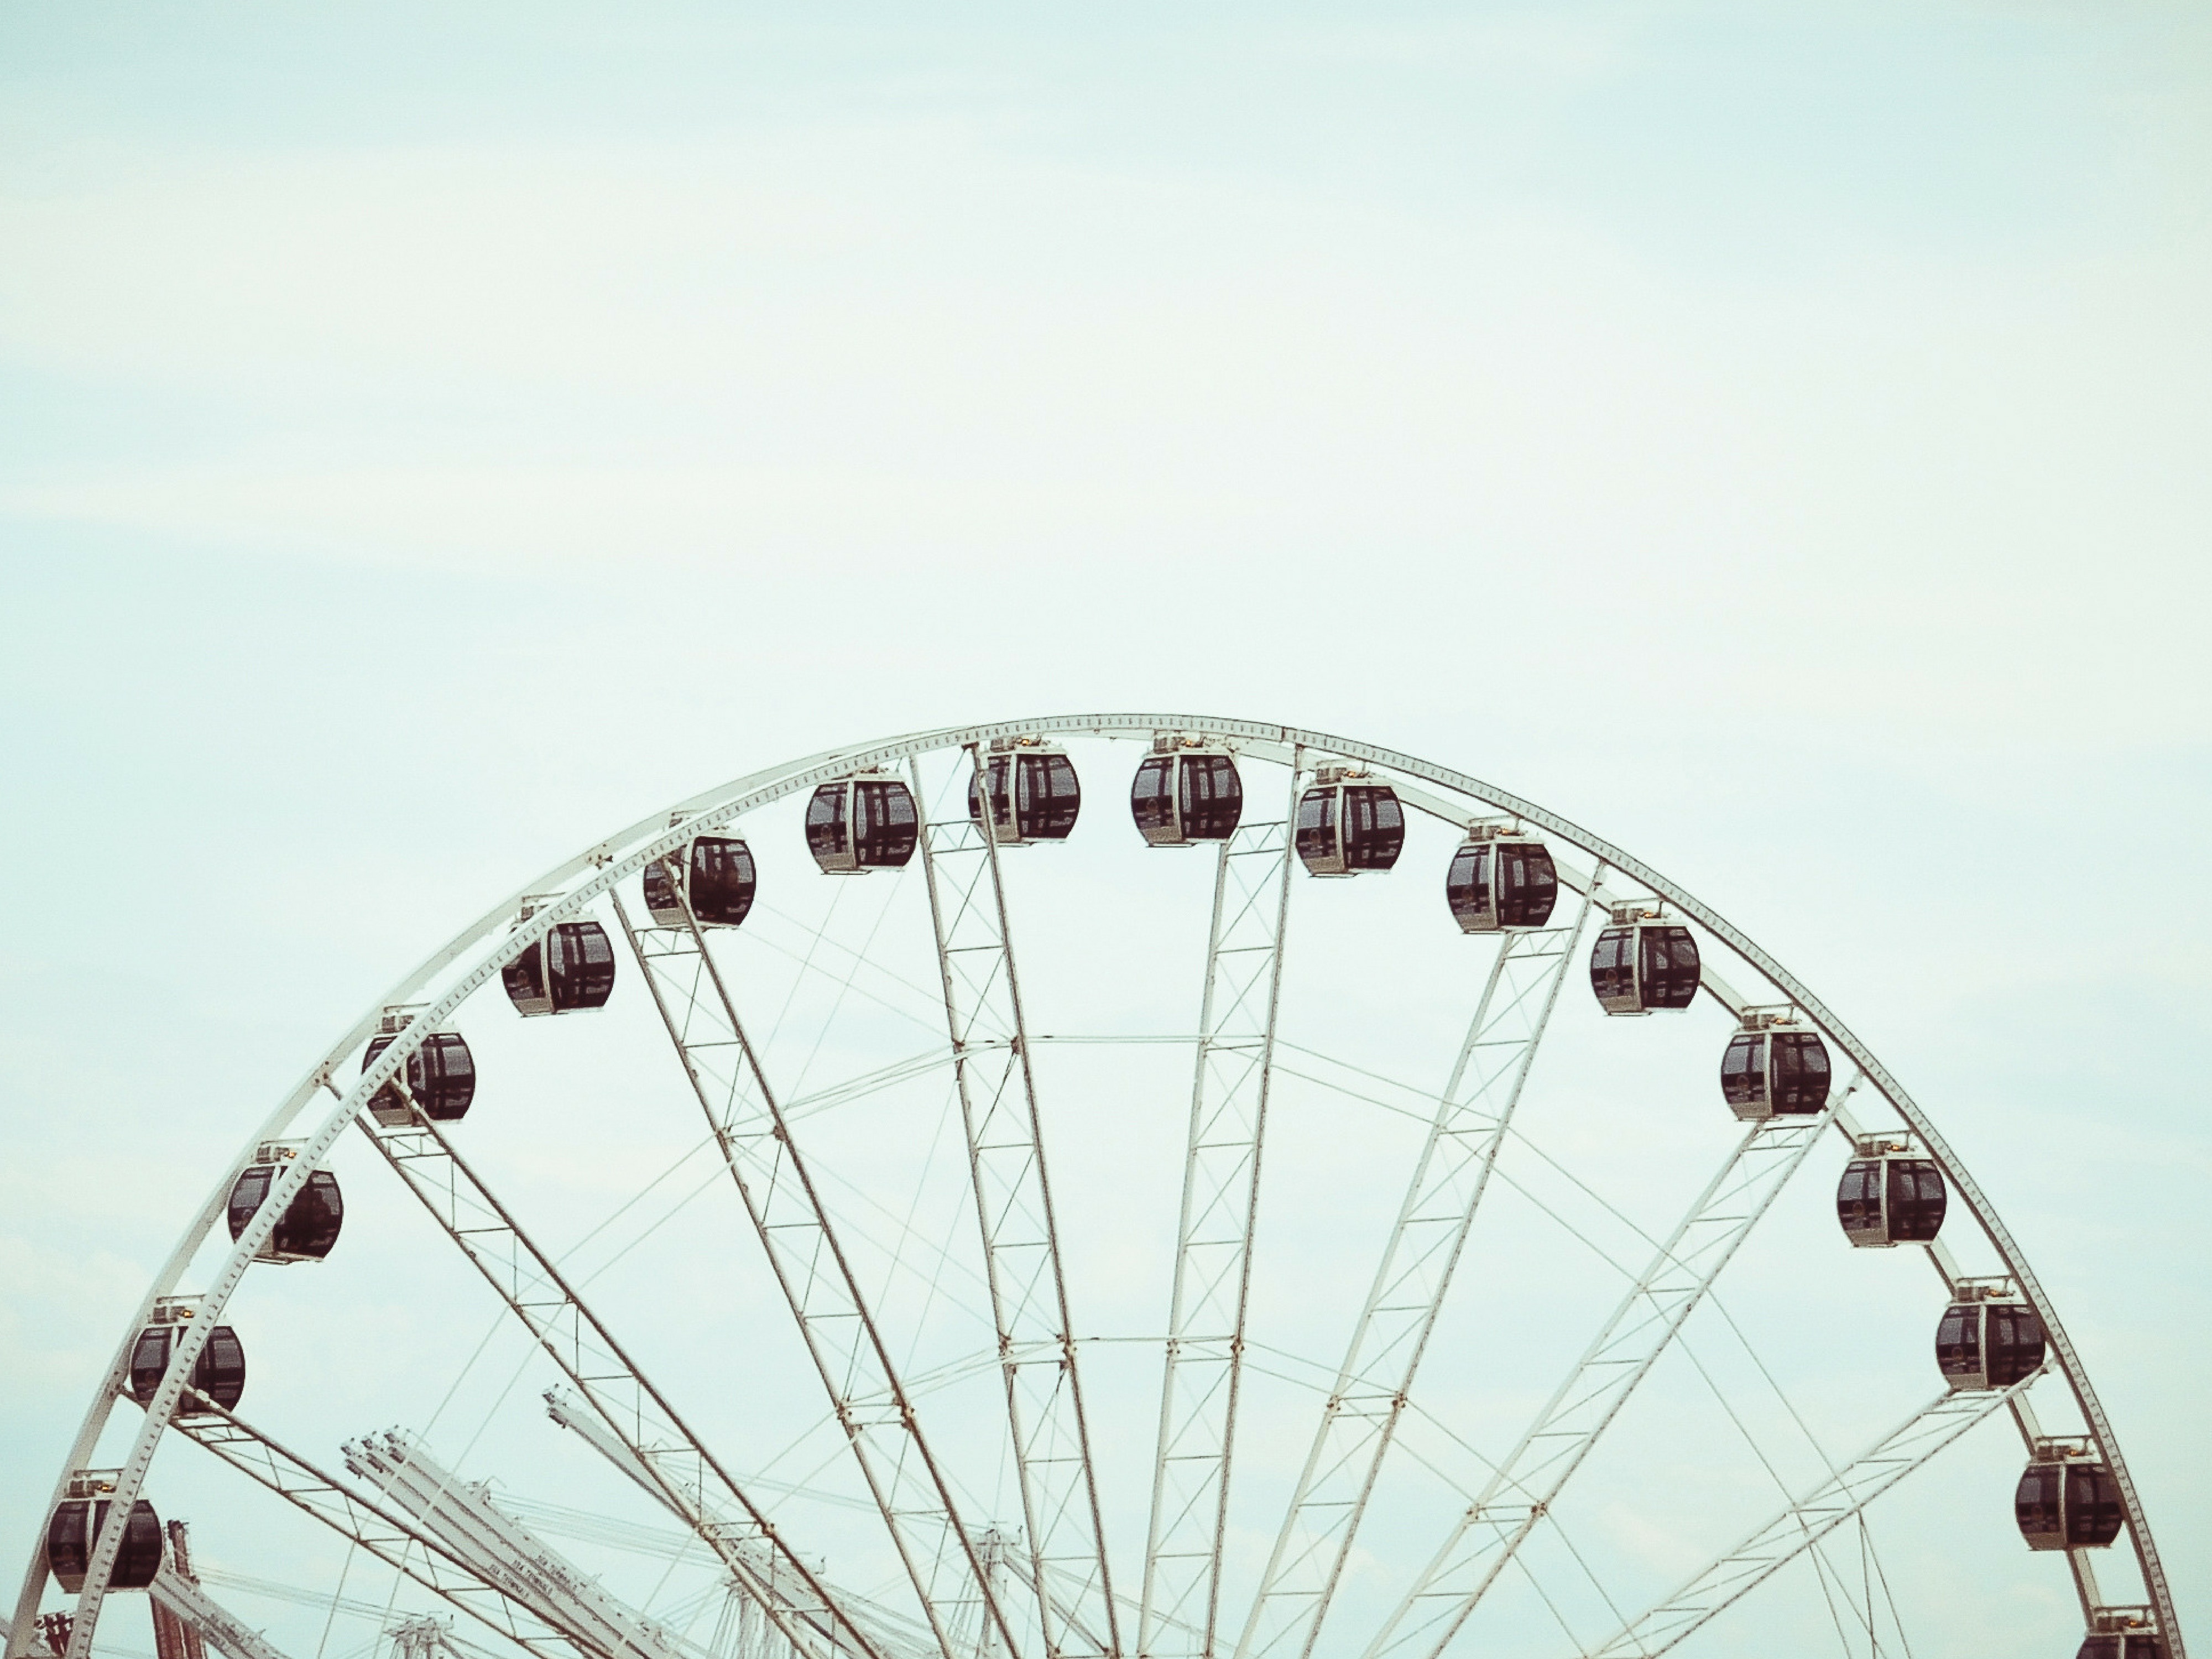 Ferris wheel in Seattle